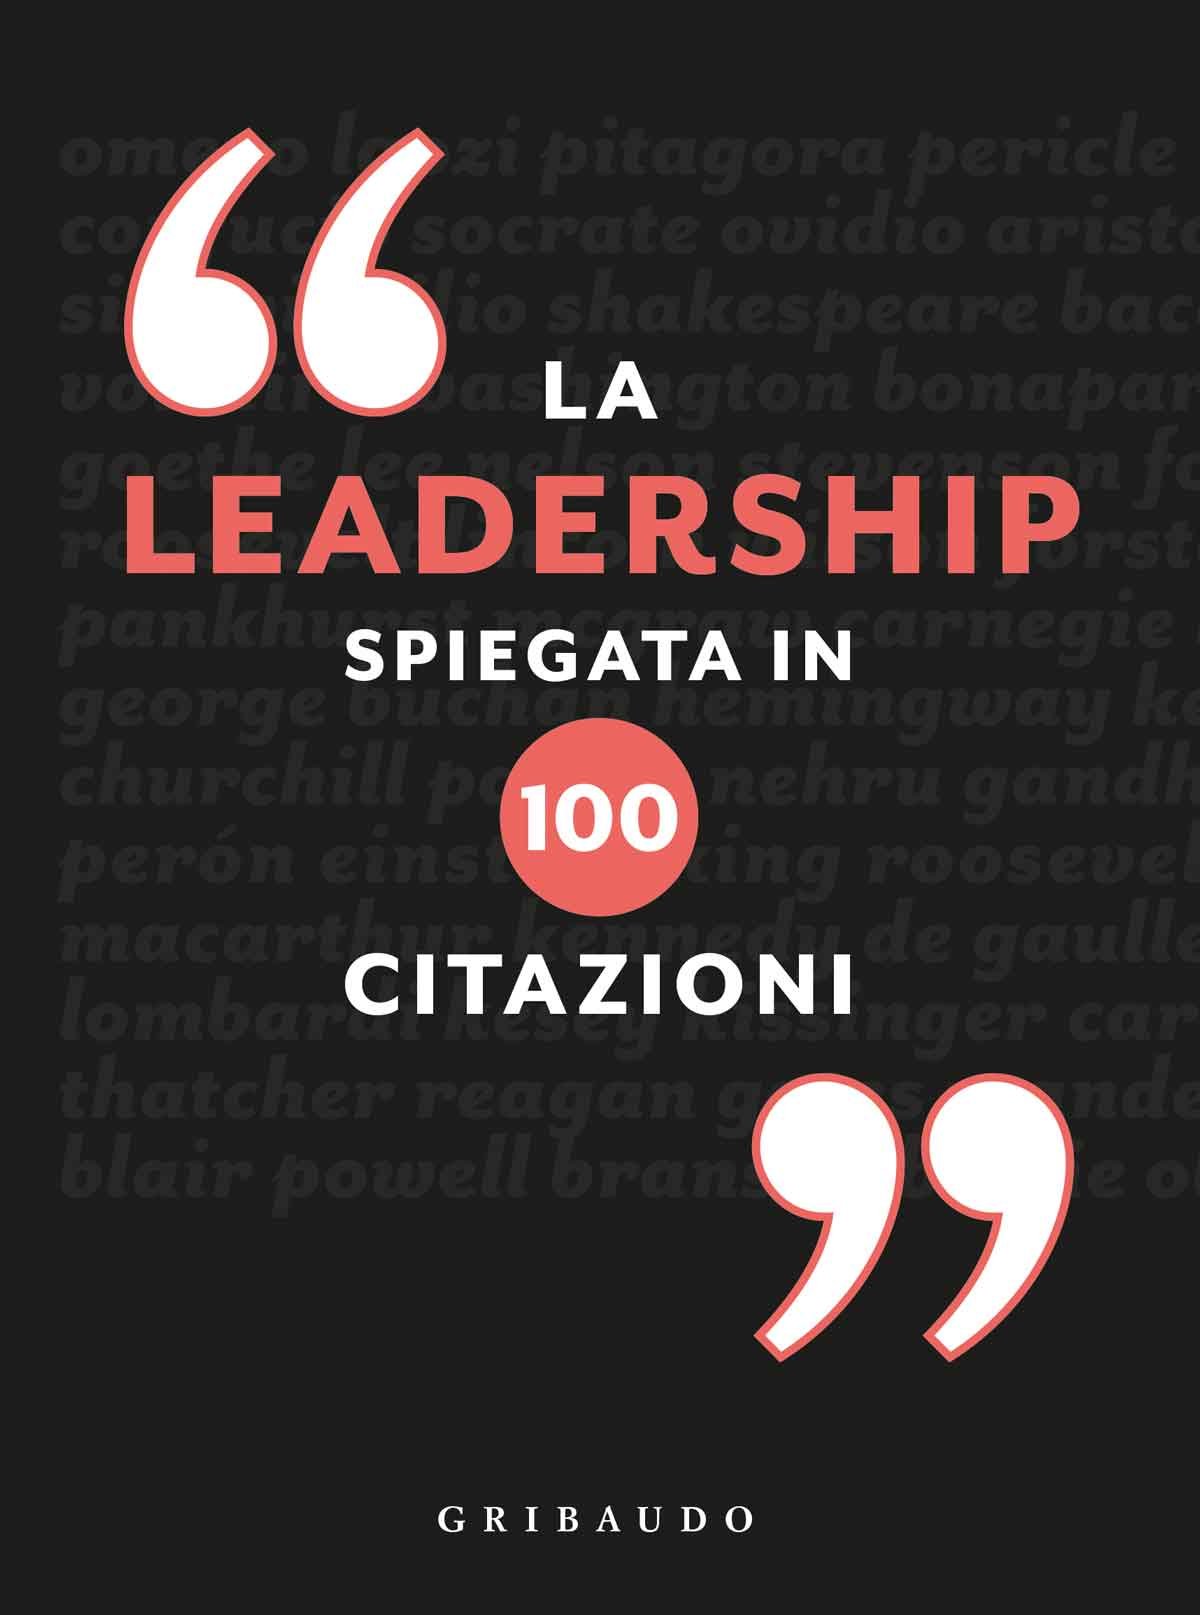 La leadership spiegata in 100 citazioni